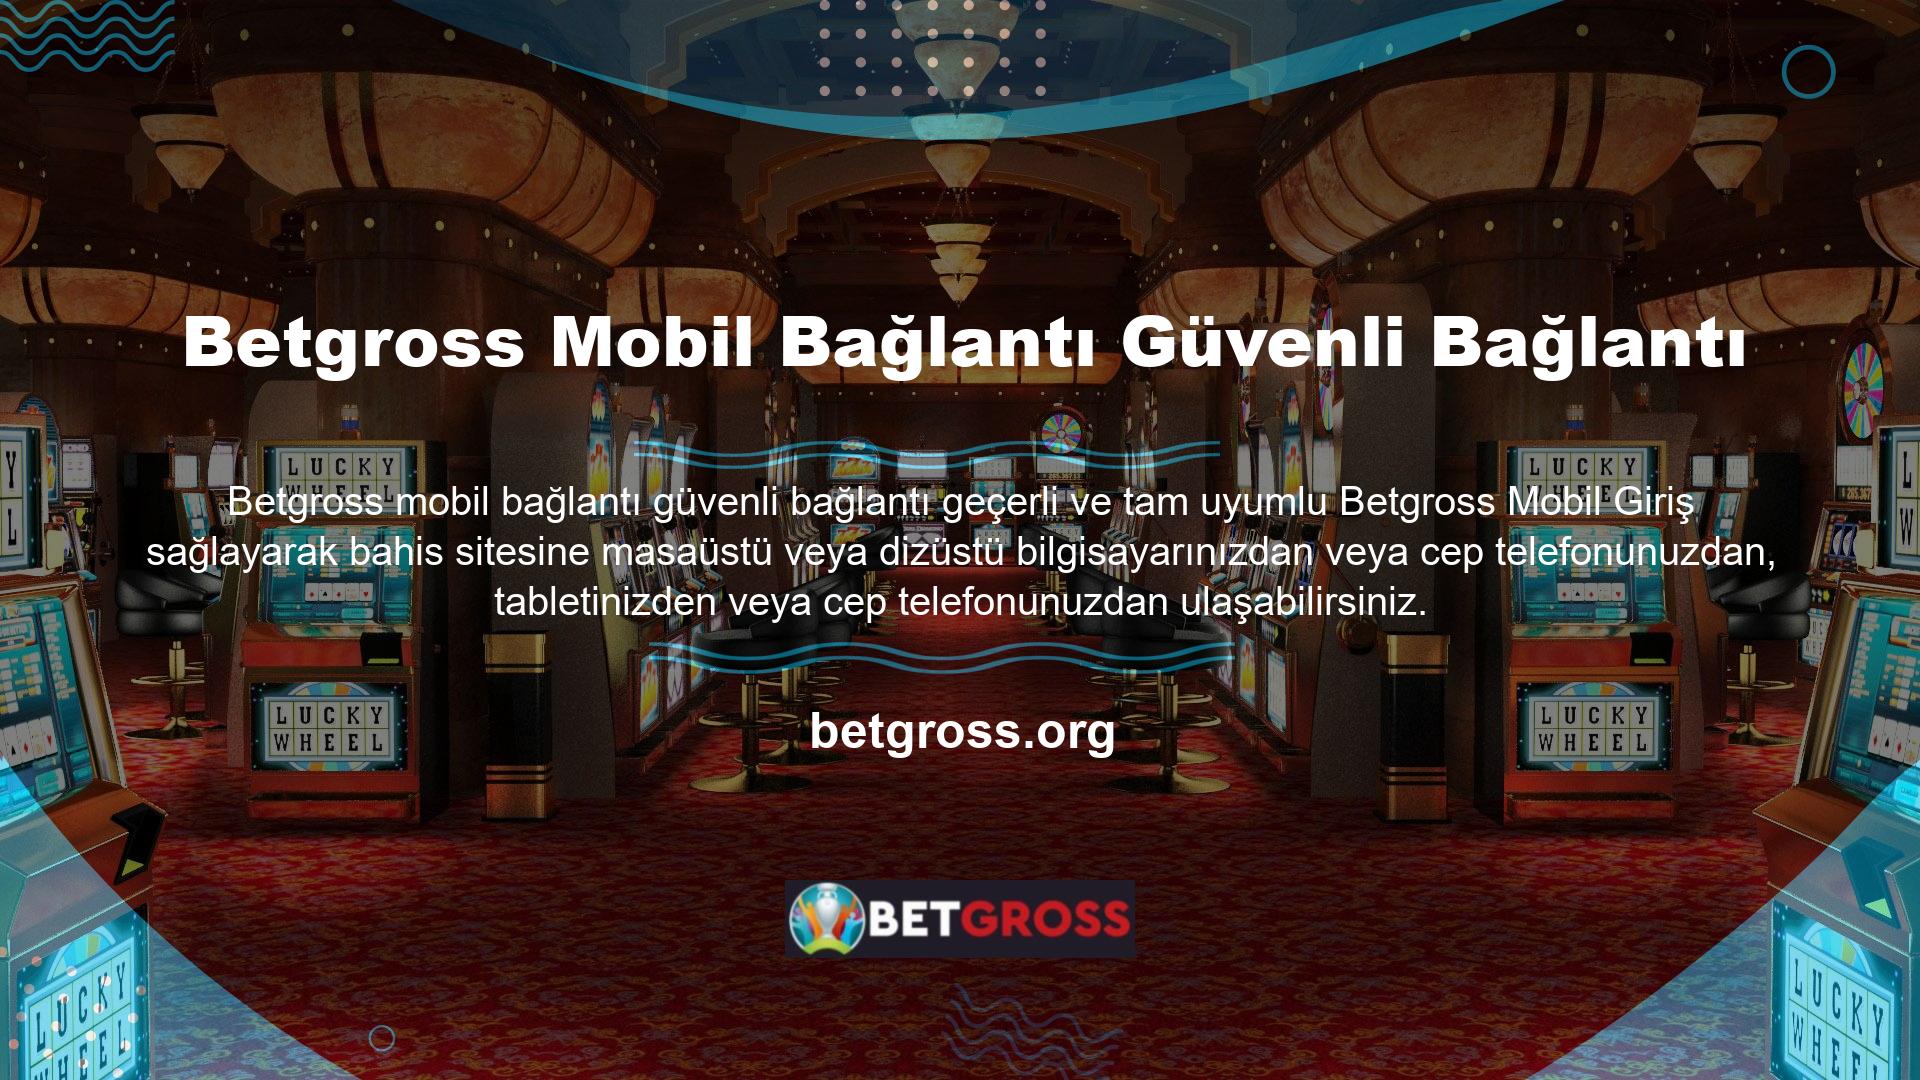 Ayrıca Betgross Mobil Bağlantı Güvenli Bağlantı mobil uygulaması tam olarak desteklenmekte ve el cihazlarıyla uyumludur